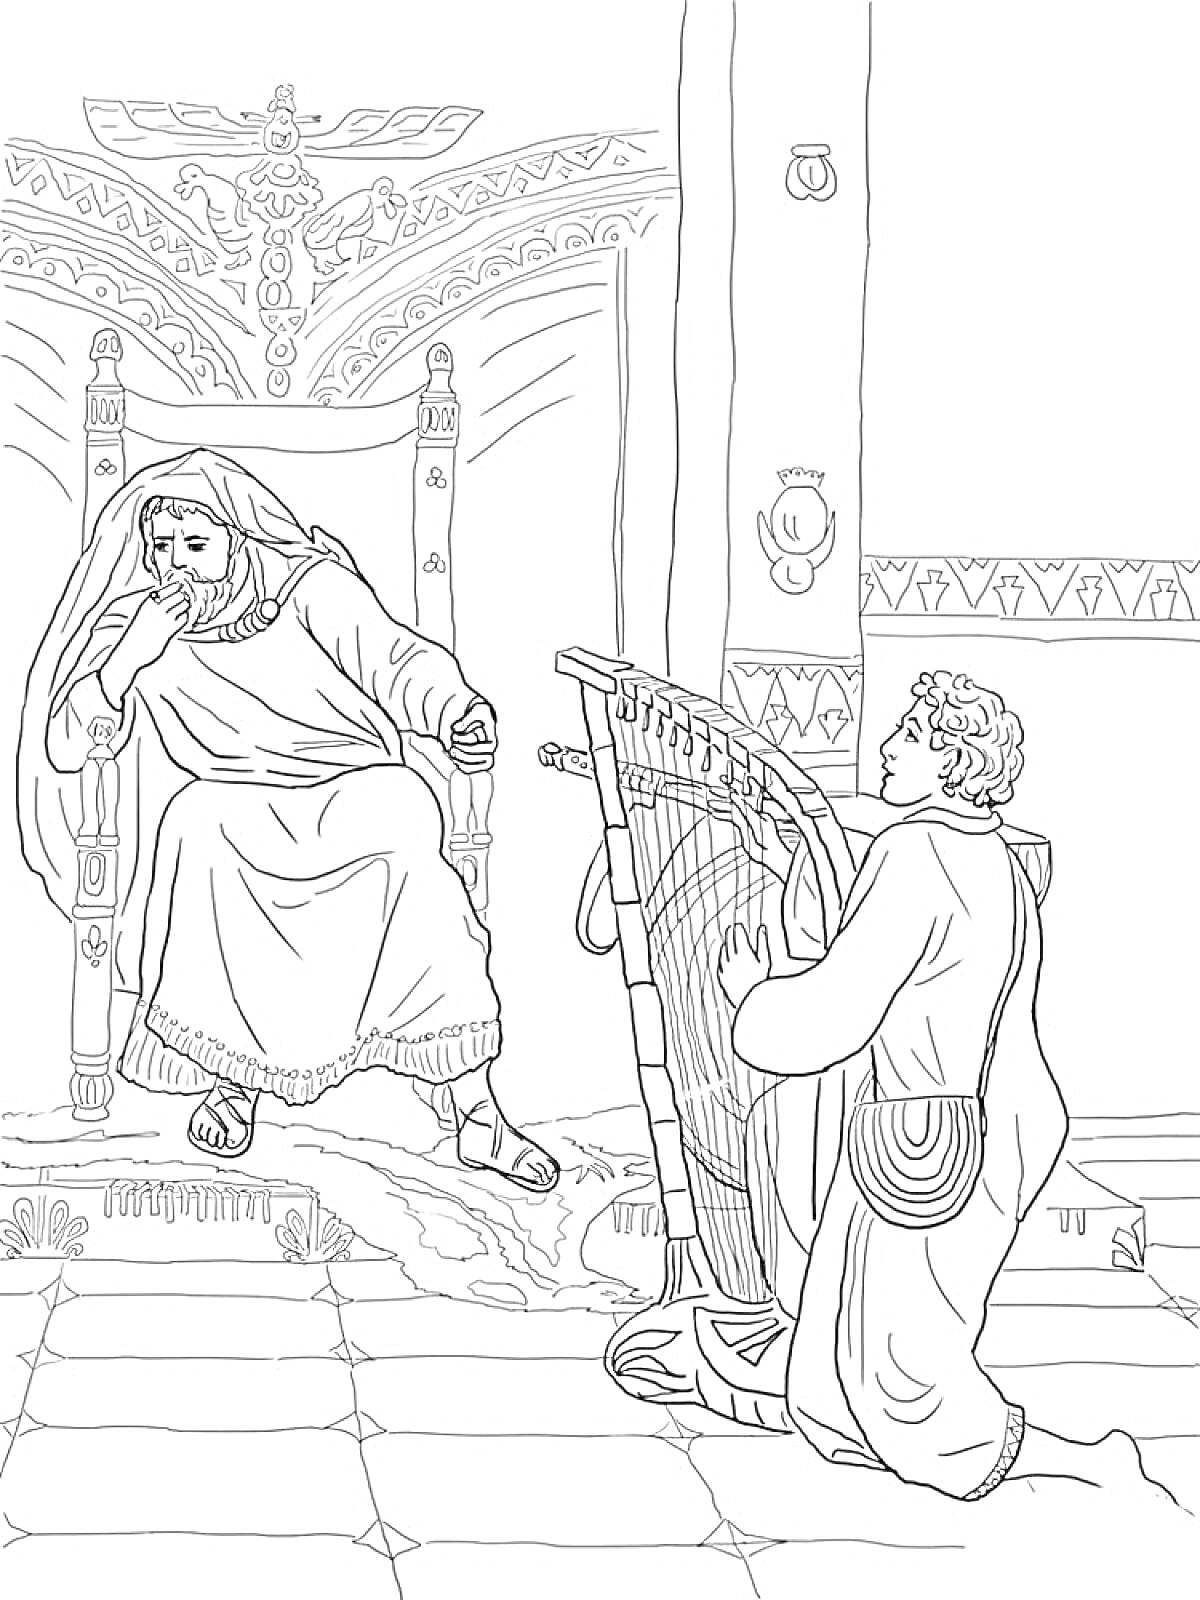 Раскраска Владыка на троне и музыкант с арфой в дворцовом интерьере